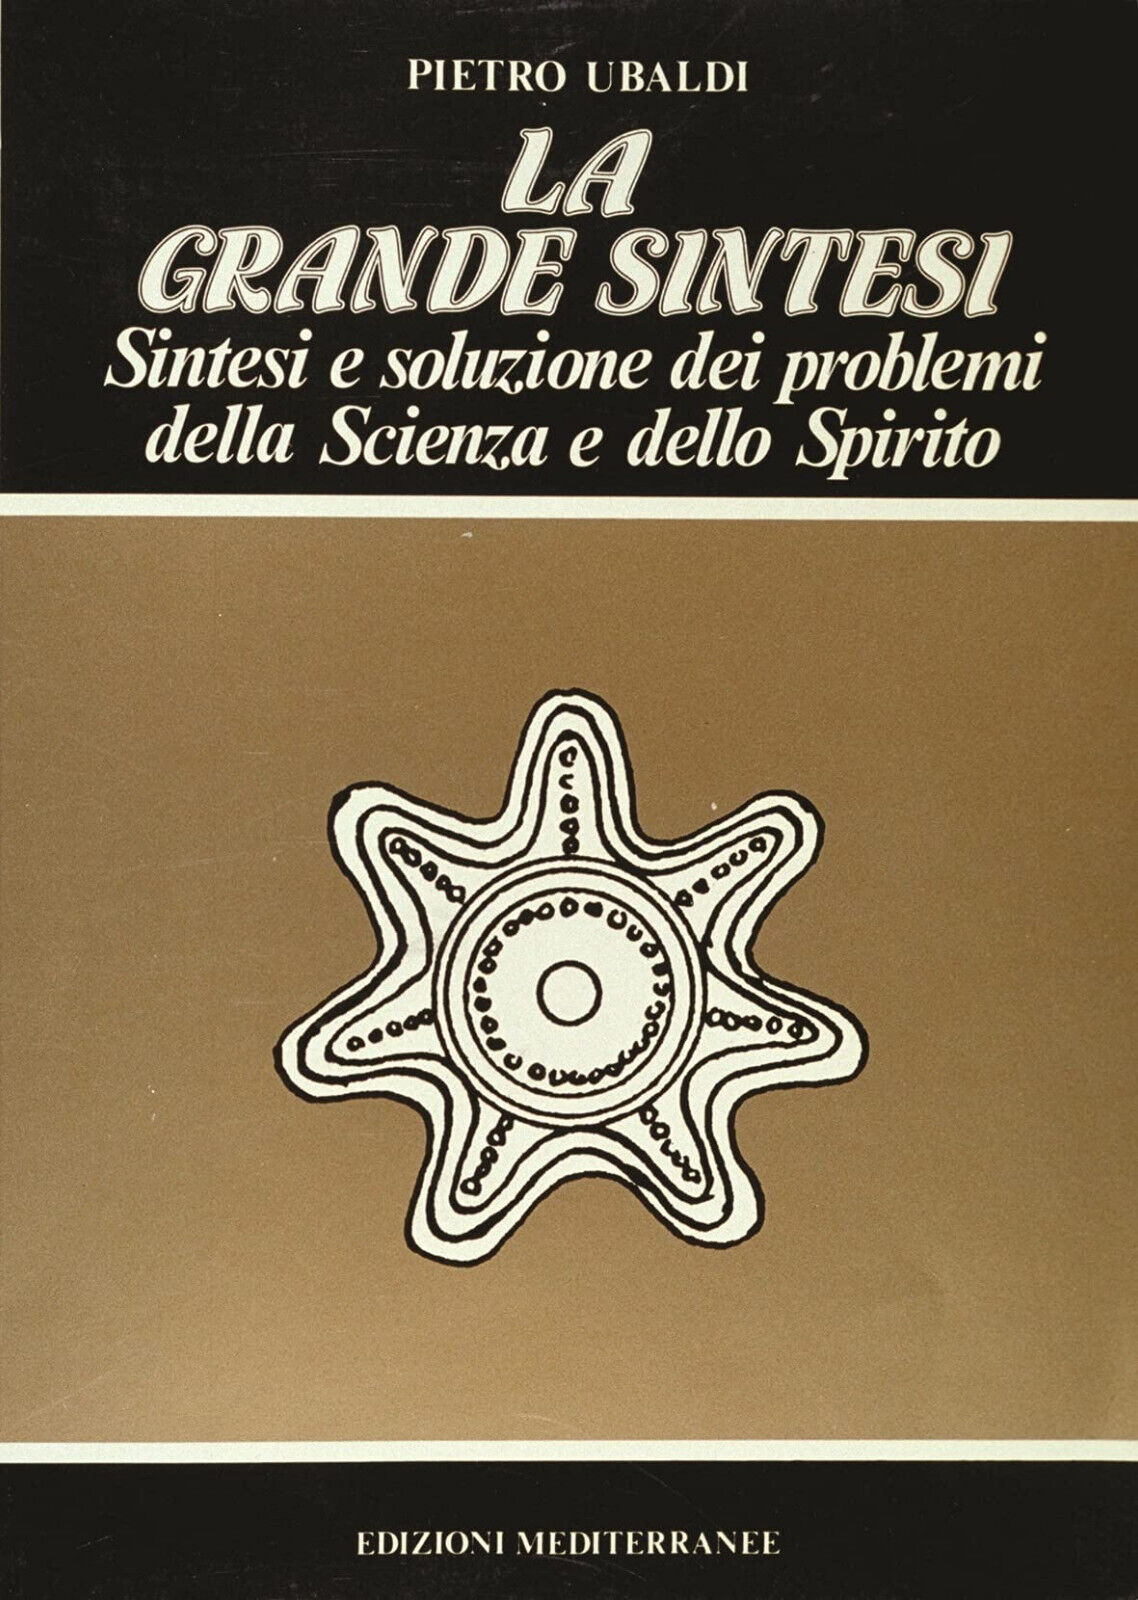 La grande sintesi - Pietro Ubaldi - Edizioni Mediterranee, 1983 libro usato